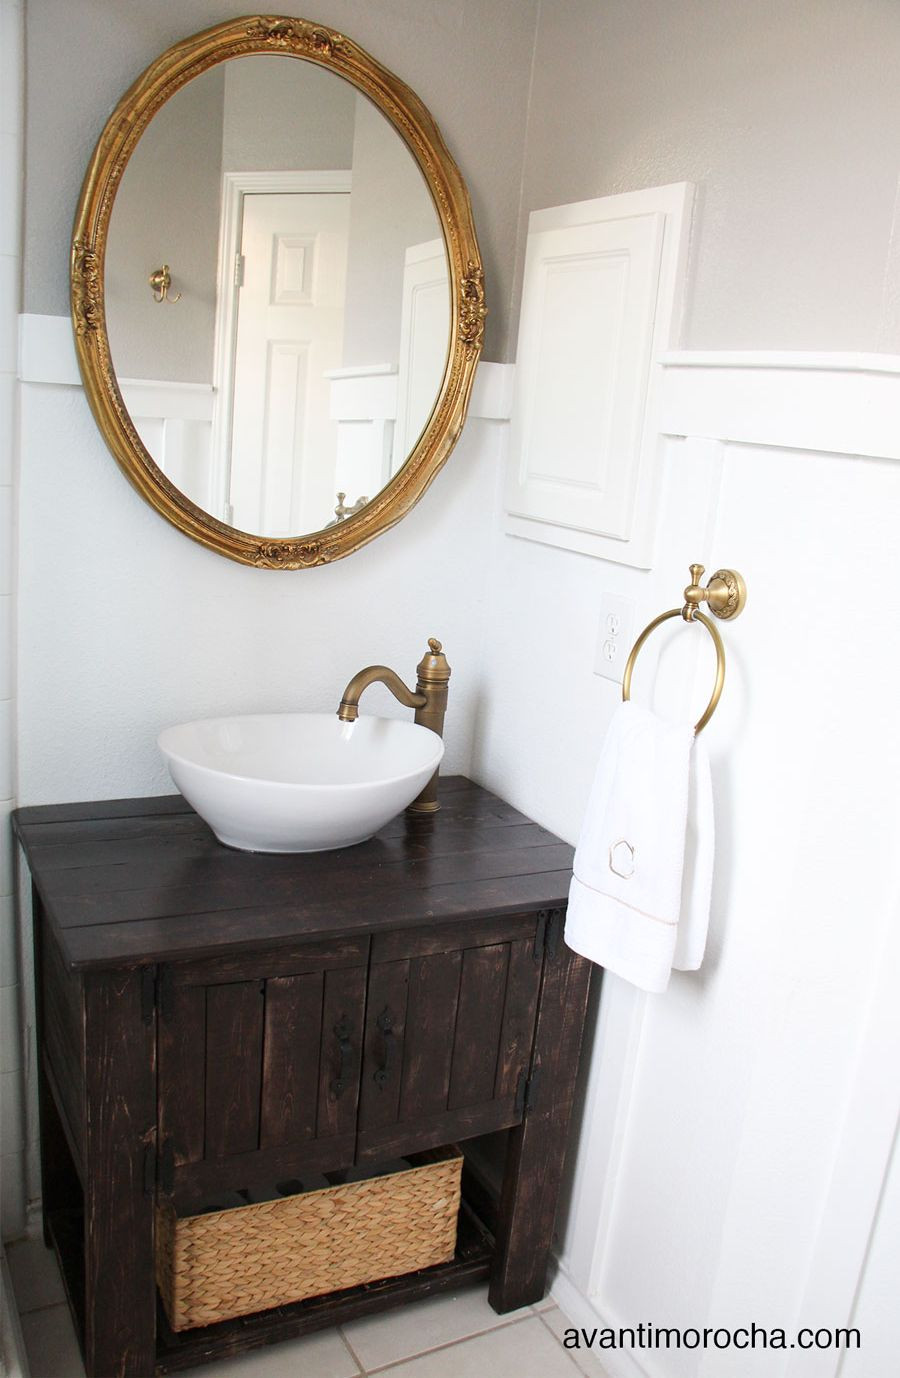 Best ideas about DIY Rustic Bathroom Vanity
. Save or Pin DIY Bathroom Vanity Ideas Perfect For Repurposers Now.